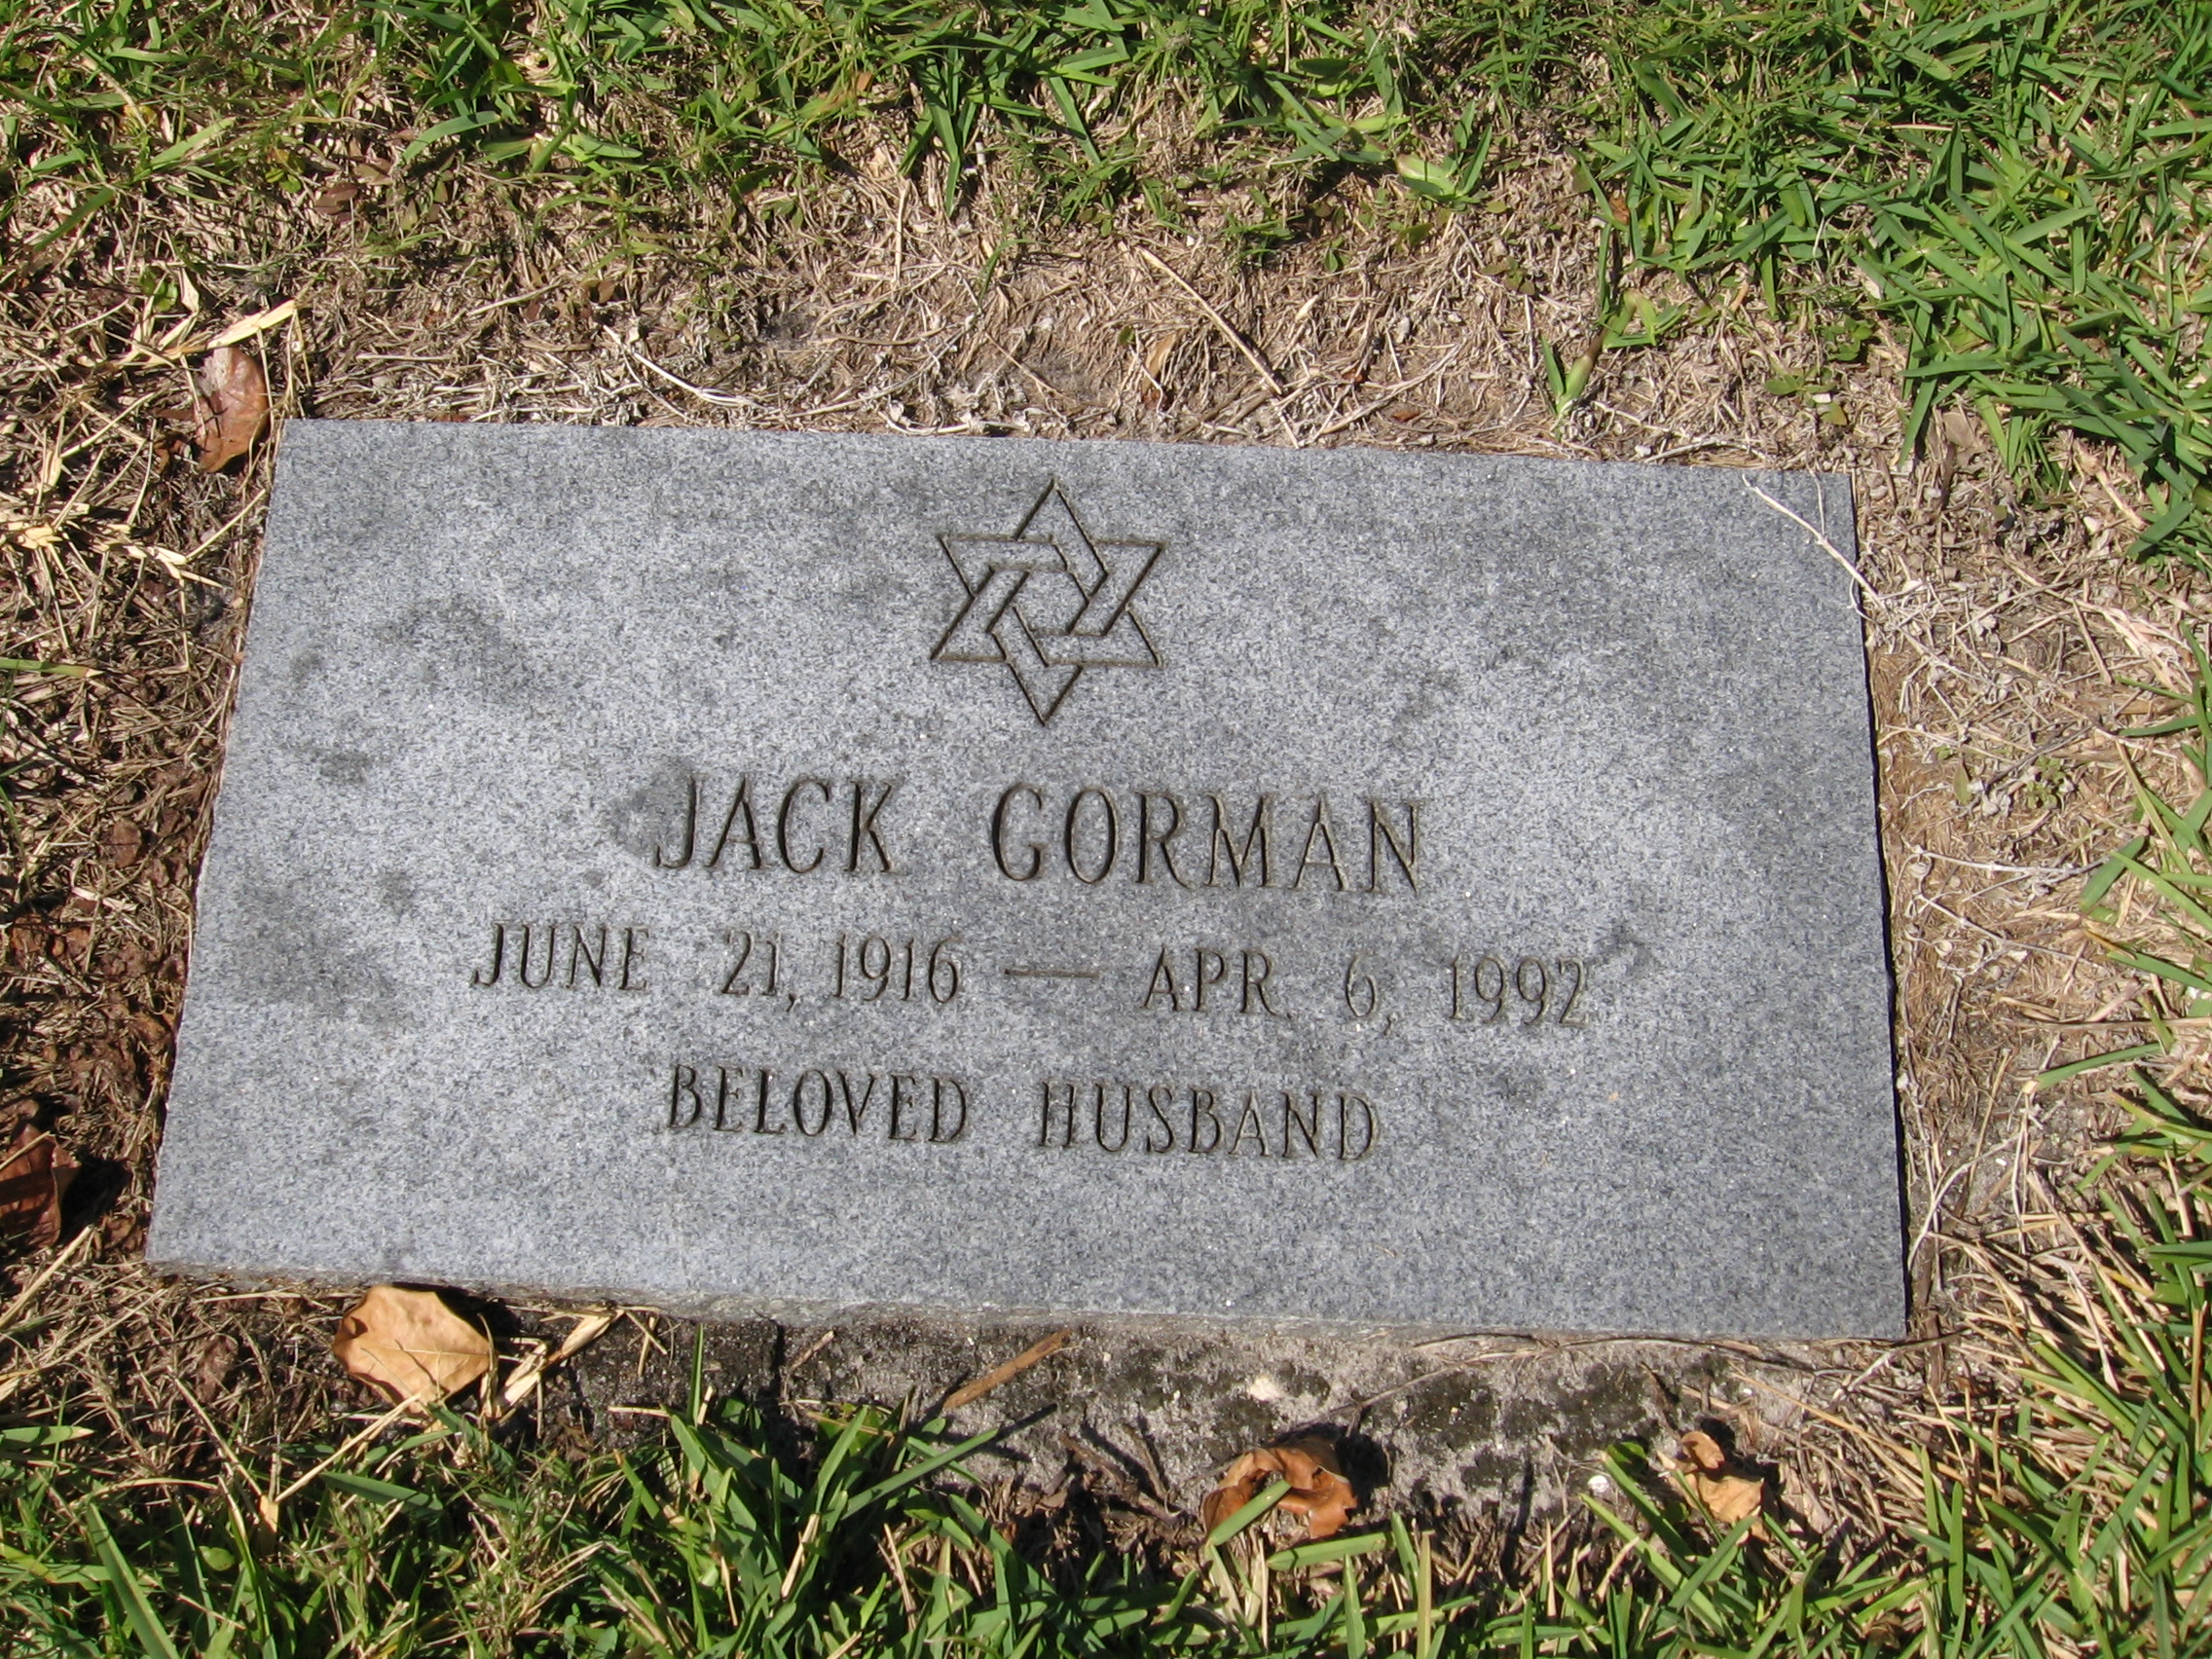 Jack Gorman